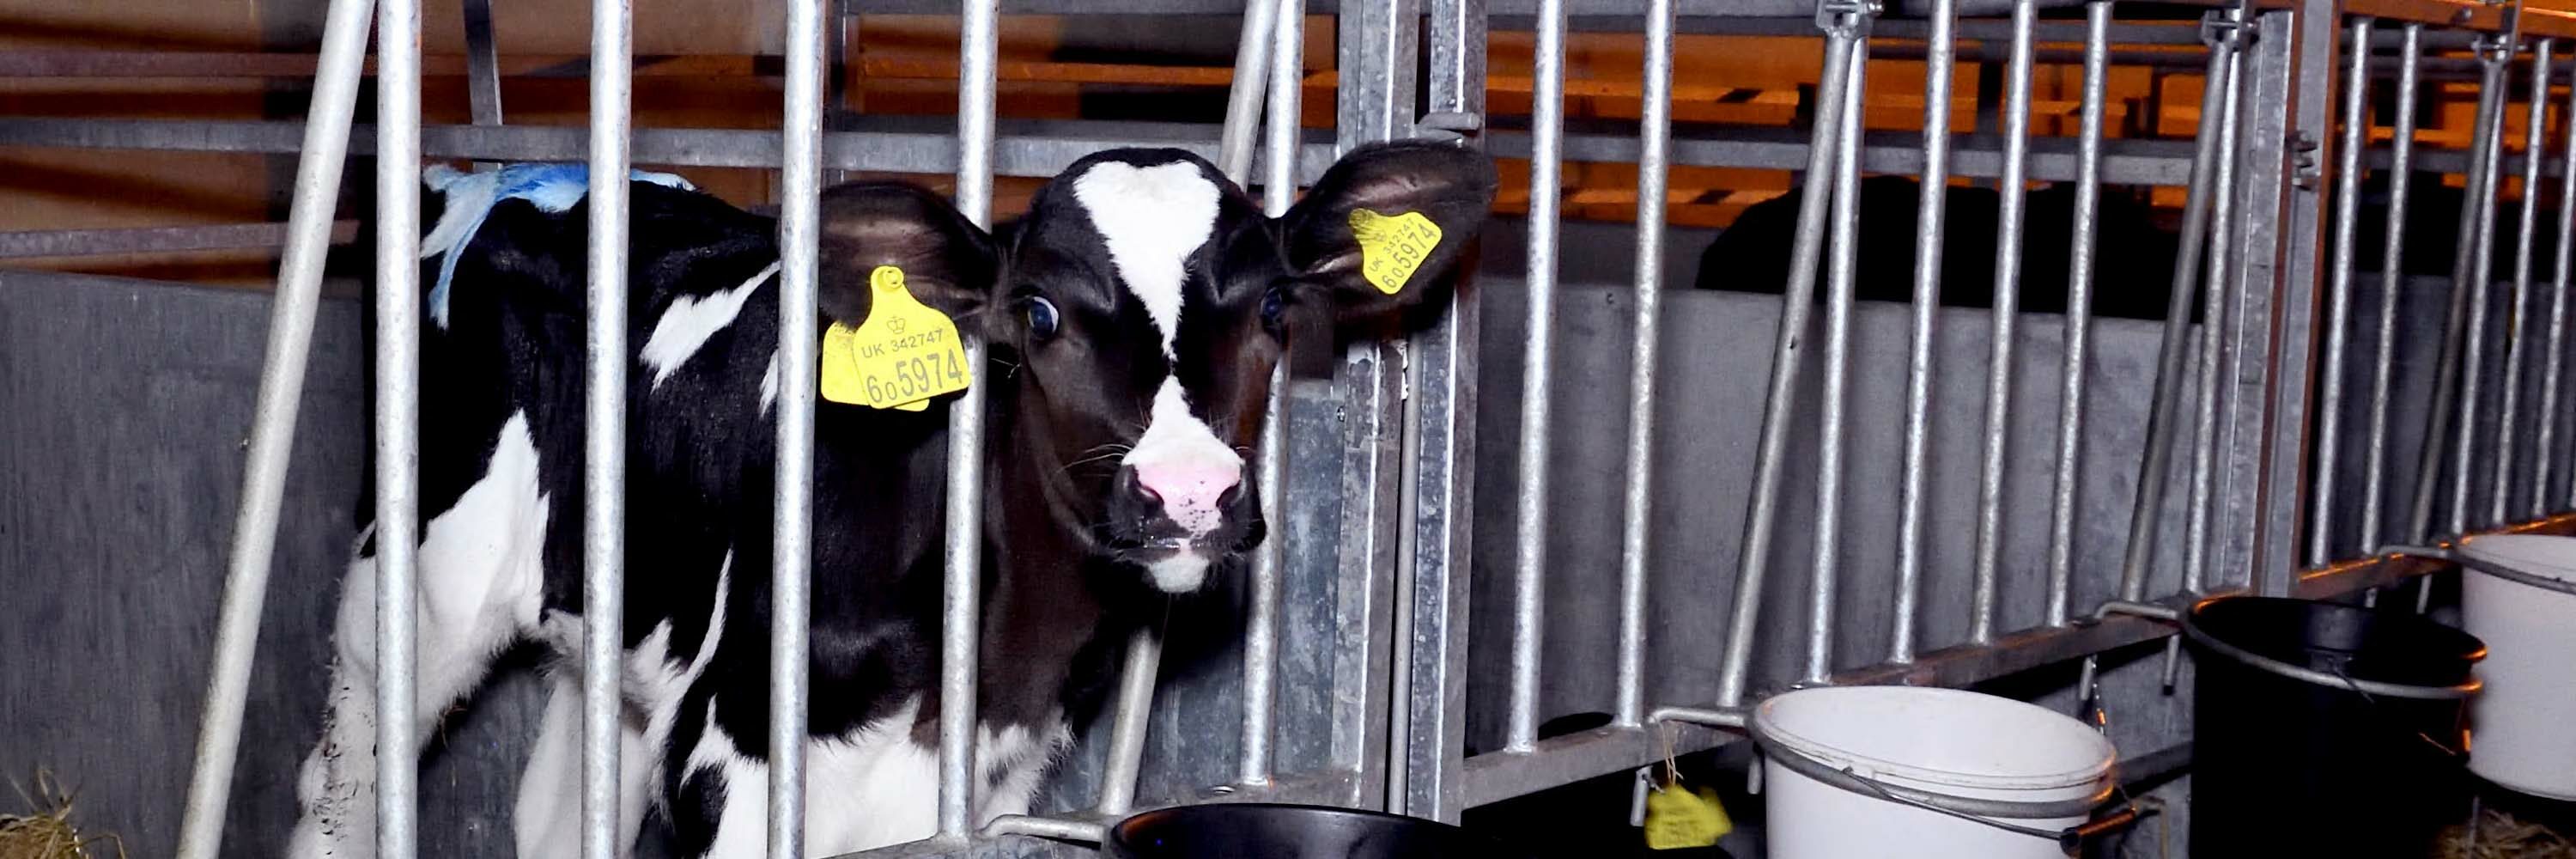 Así daña la industria láctea a las vacas